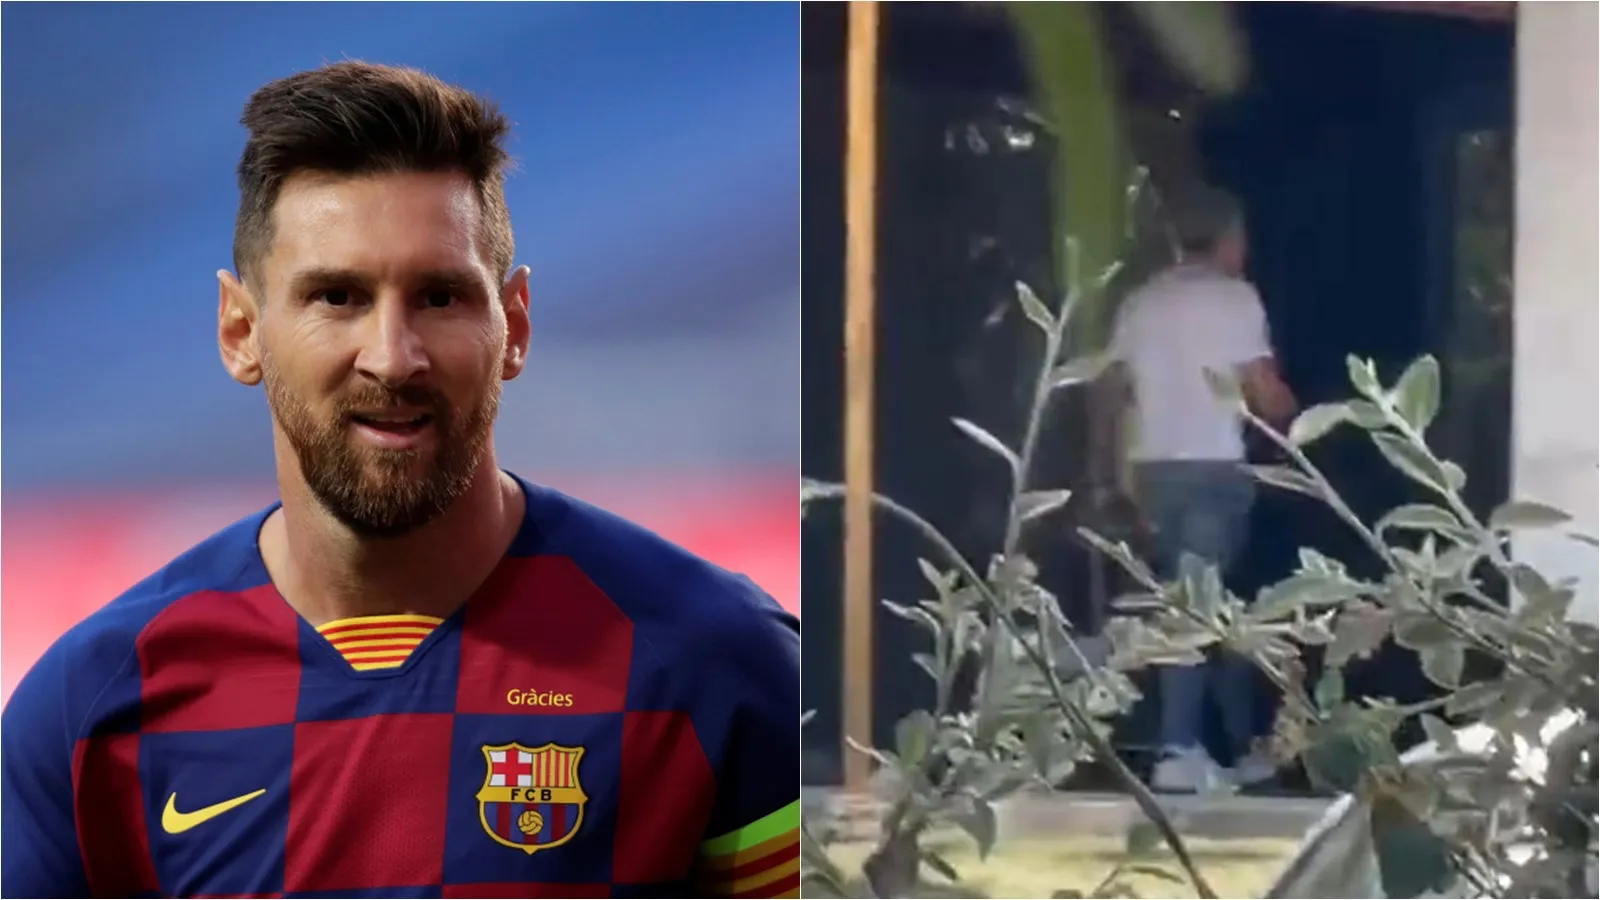 NÓNG: Đại diện Messi gặp riêng chủ tịch Barca